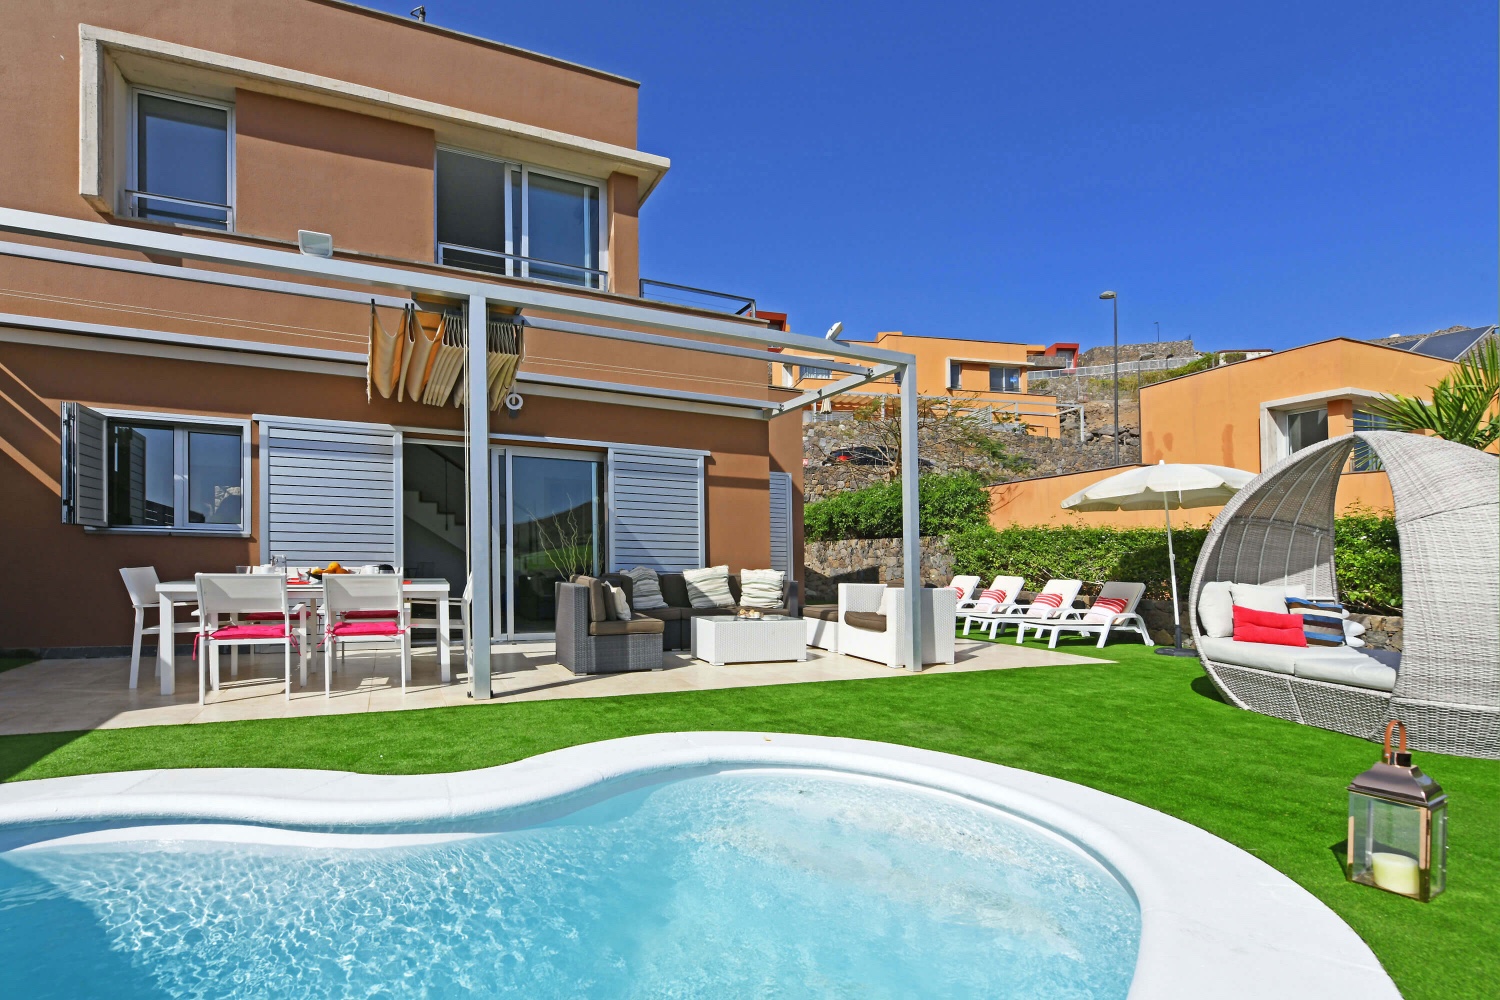 Flott hus med lyst interiør og stor hage, privat basseng med solvarme og vakker utsikt over golfbanen